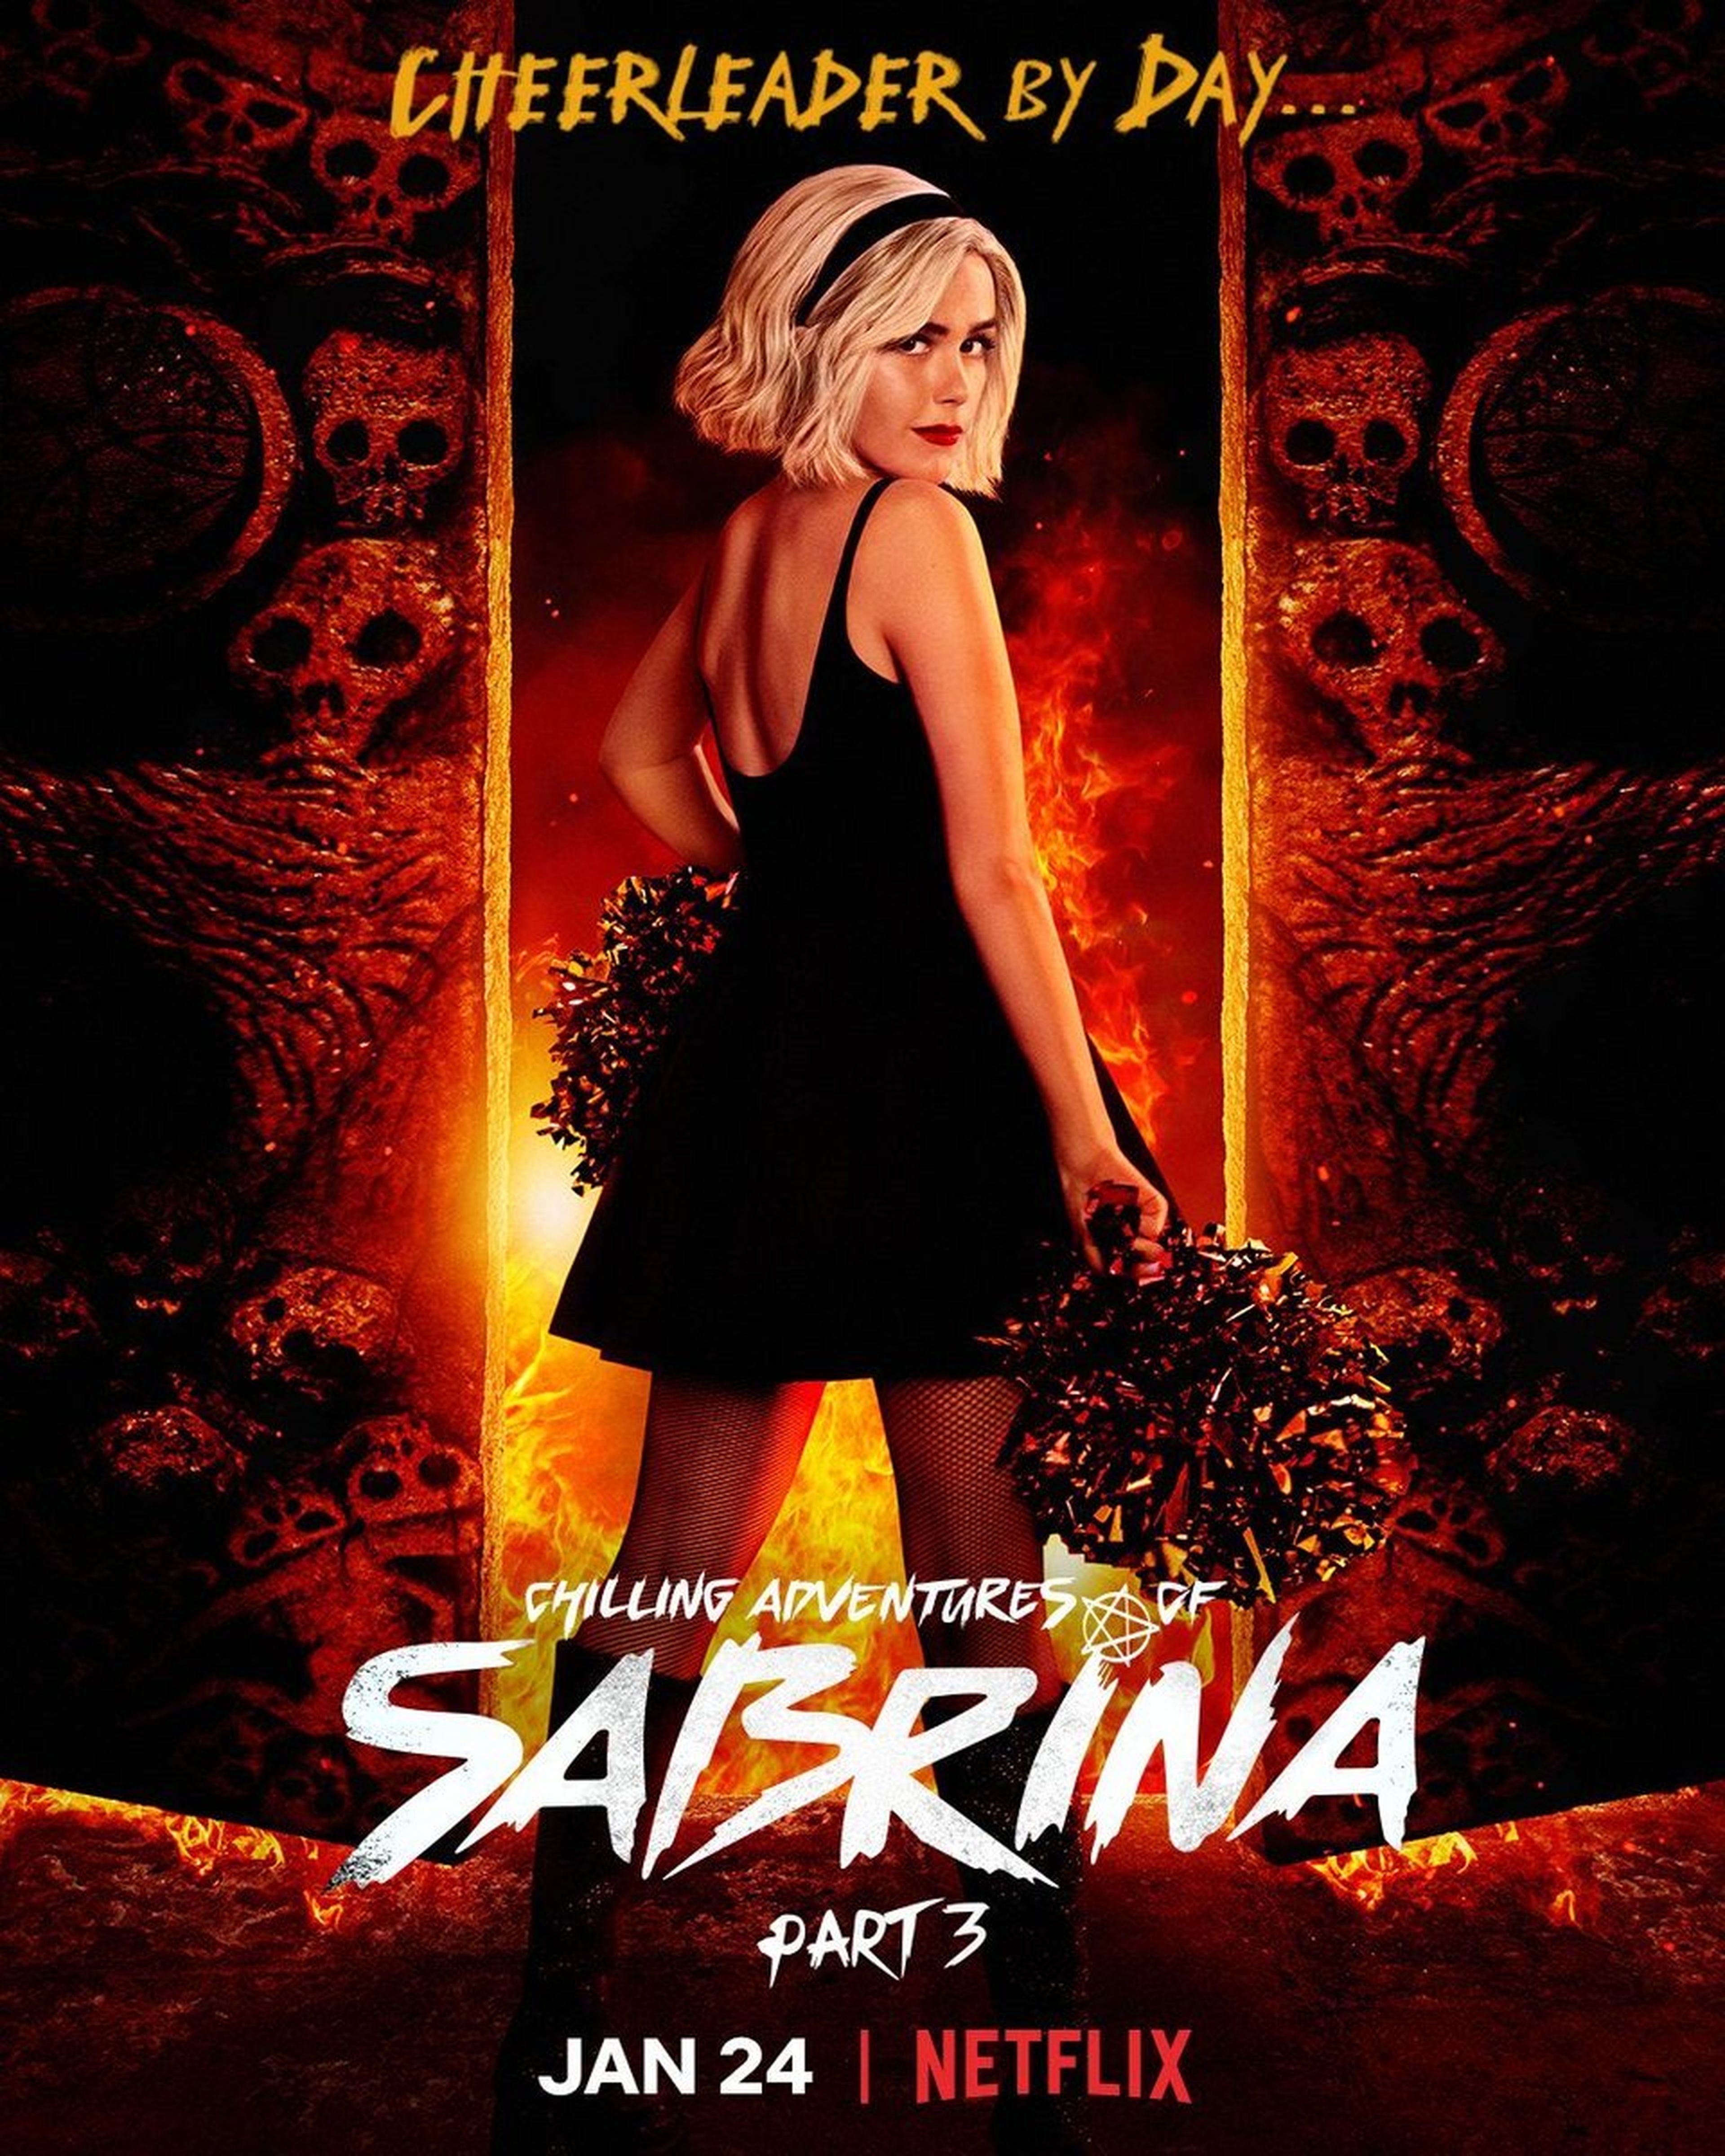 Las escalofriantes aventuras de Sabrina poster